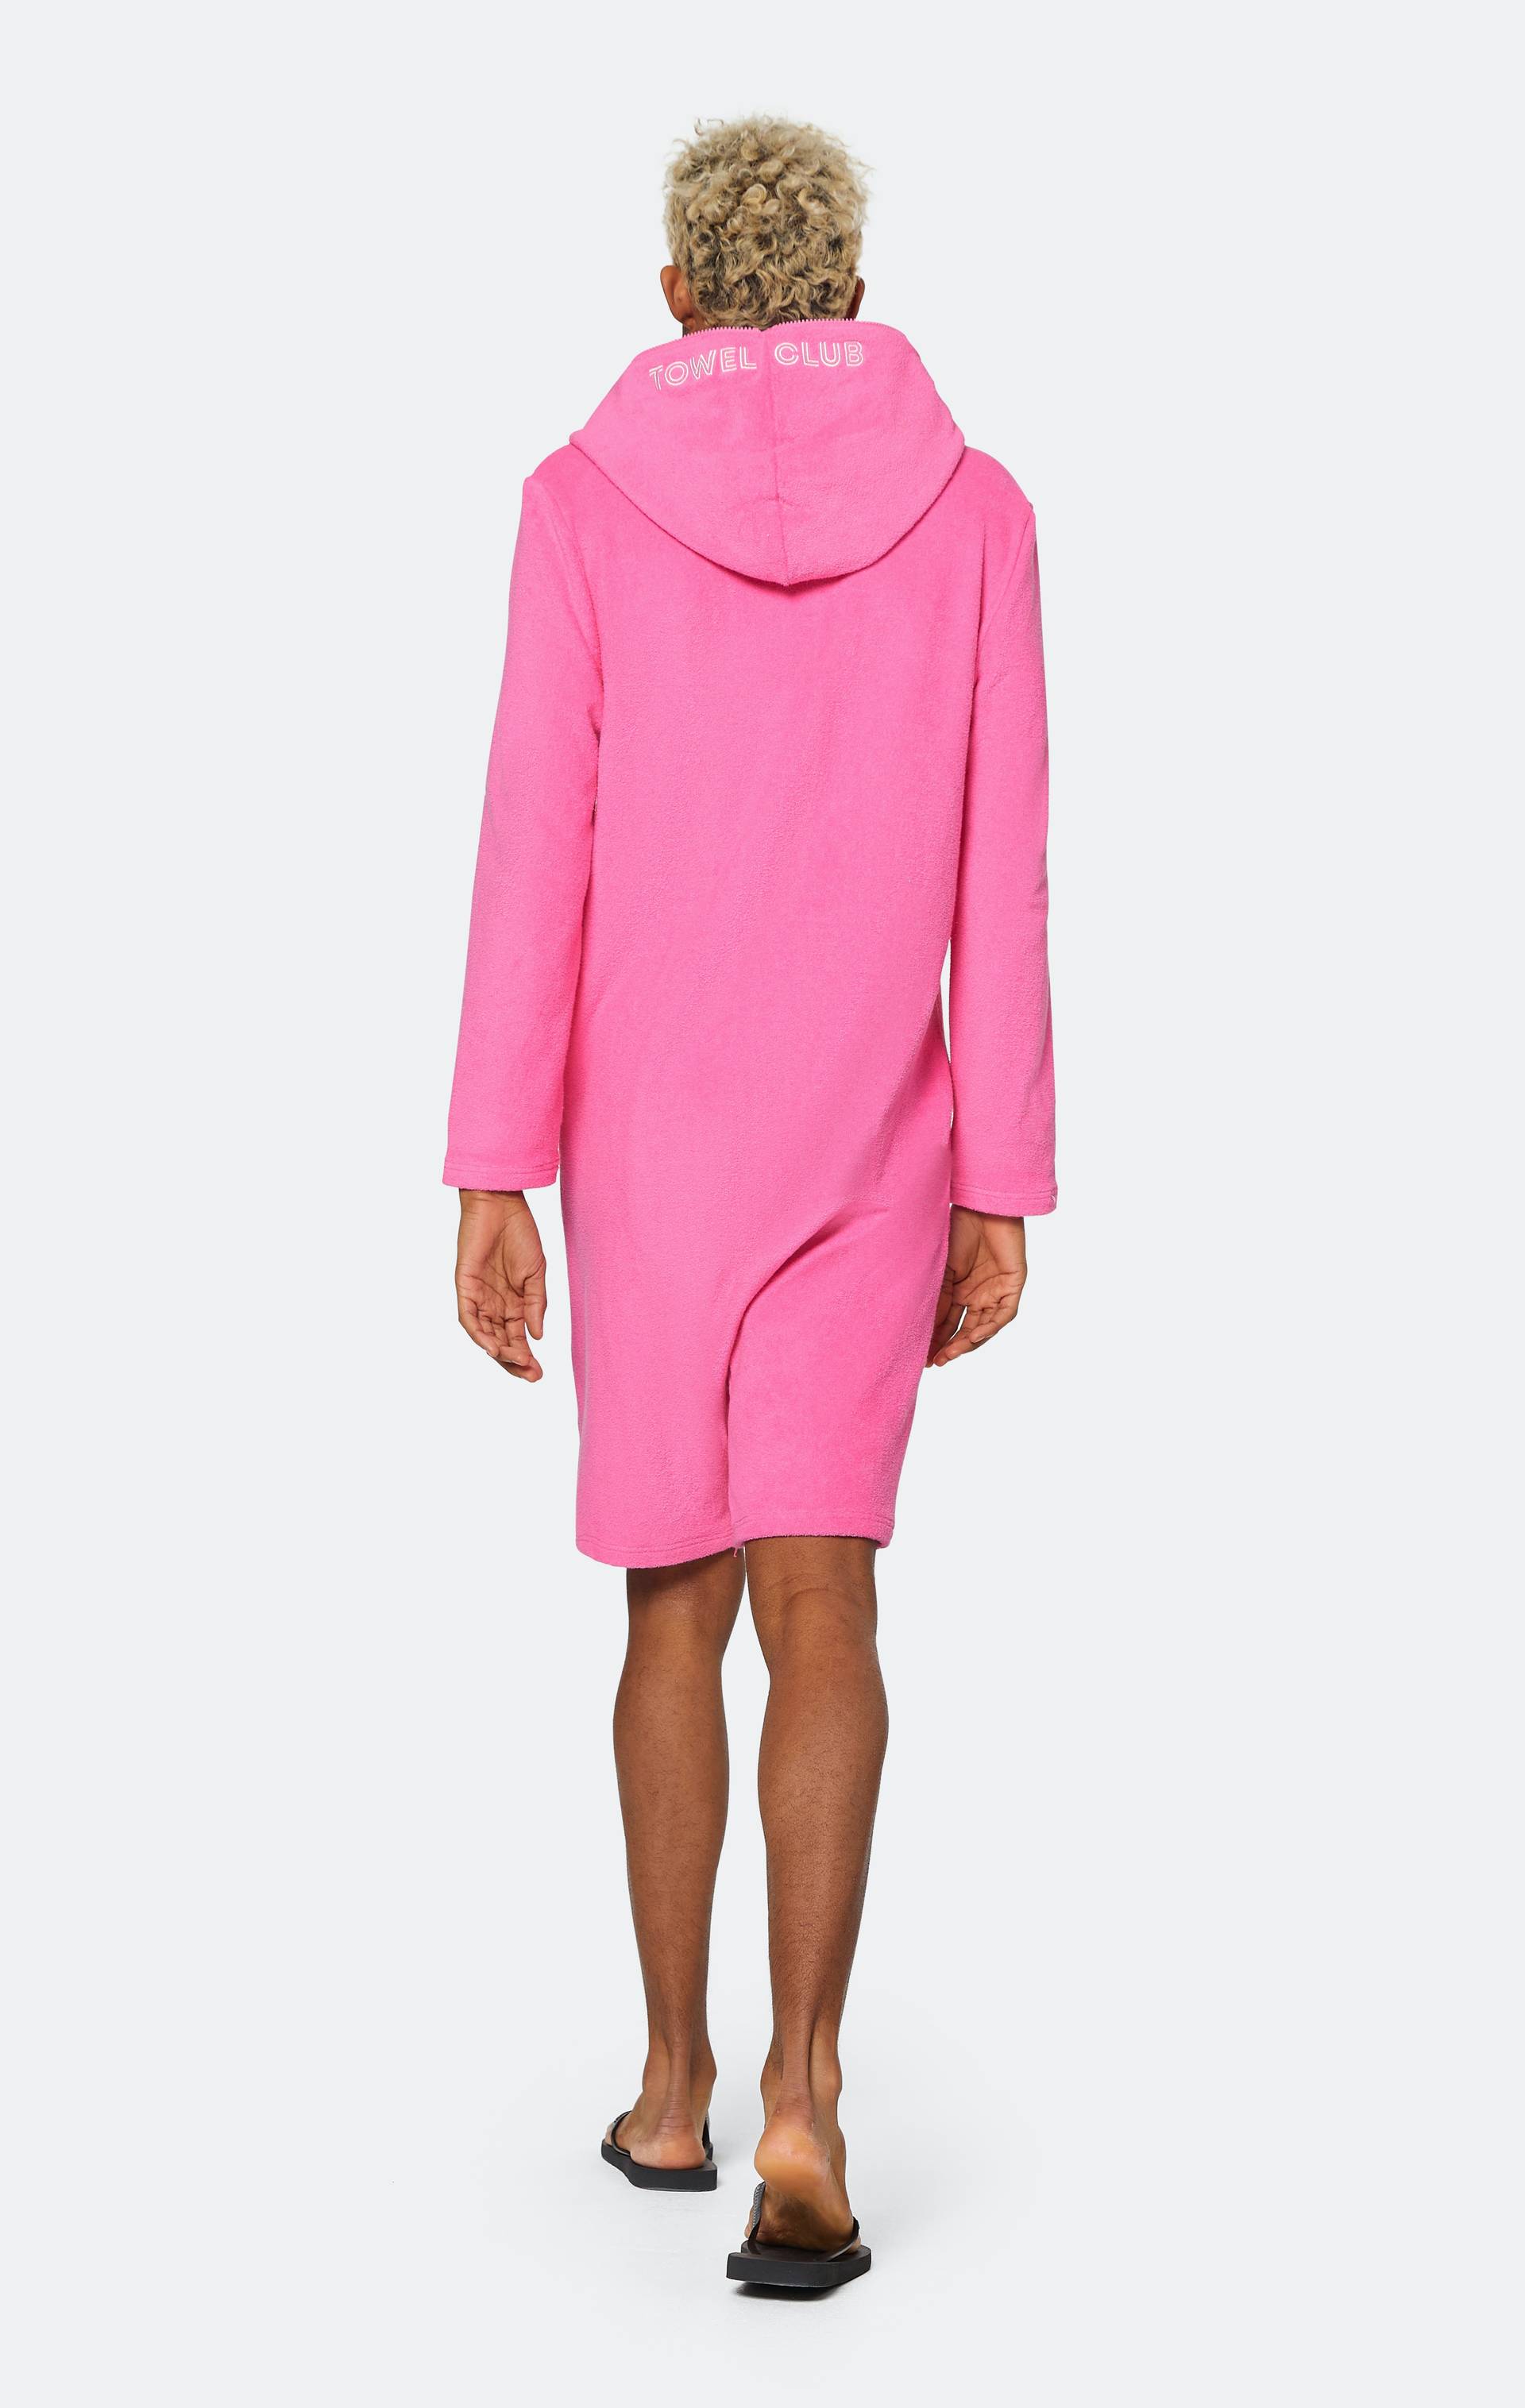 Onepiece Towel Club X Onepiece Towel Jumpsuit Pink - 7